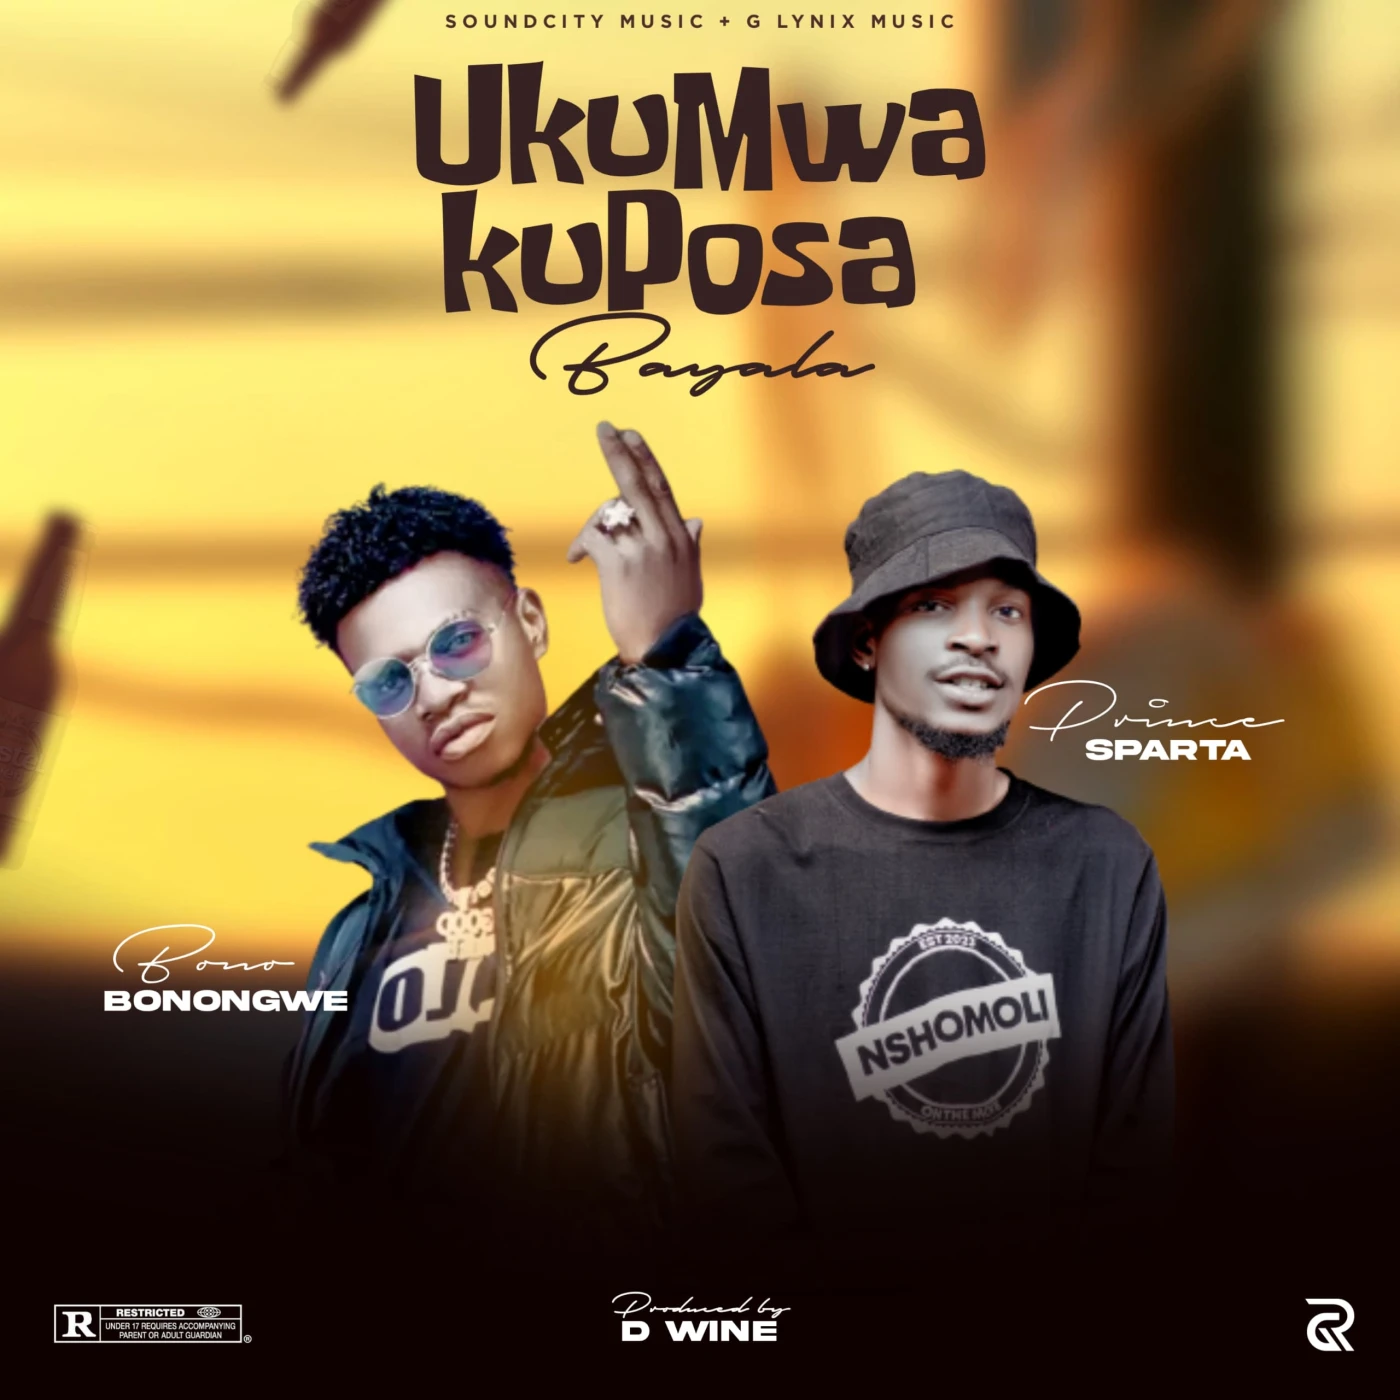 ukumwa-kuposa-bayala-ft-bono-bonogwe--prince-sparta-bono-bonongwe-Just Malawi Music